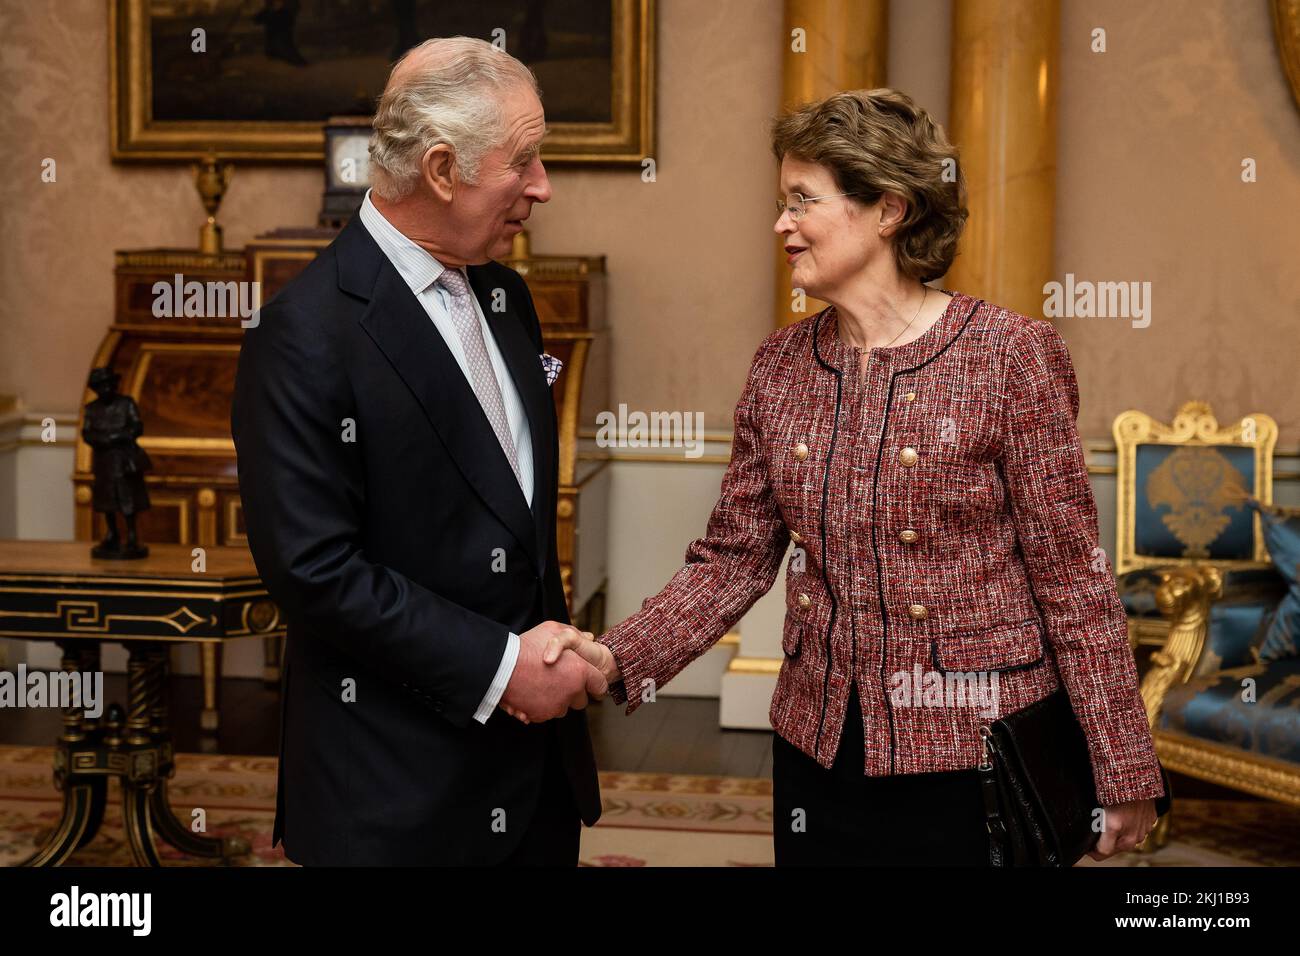 Le roi Charles III tient une audience avec le gouverneur de l'Australie du Sud, Frances Adamson, à Buckingham Palace, à Londres. Date de la photo: Jeudi 24 novembre 2022. Banque D'Images